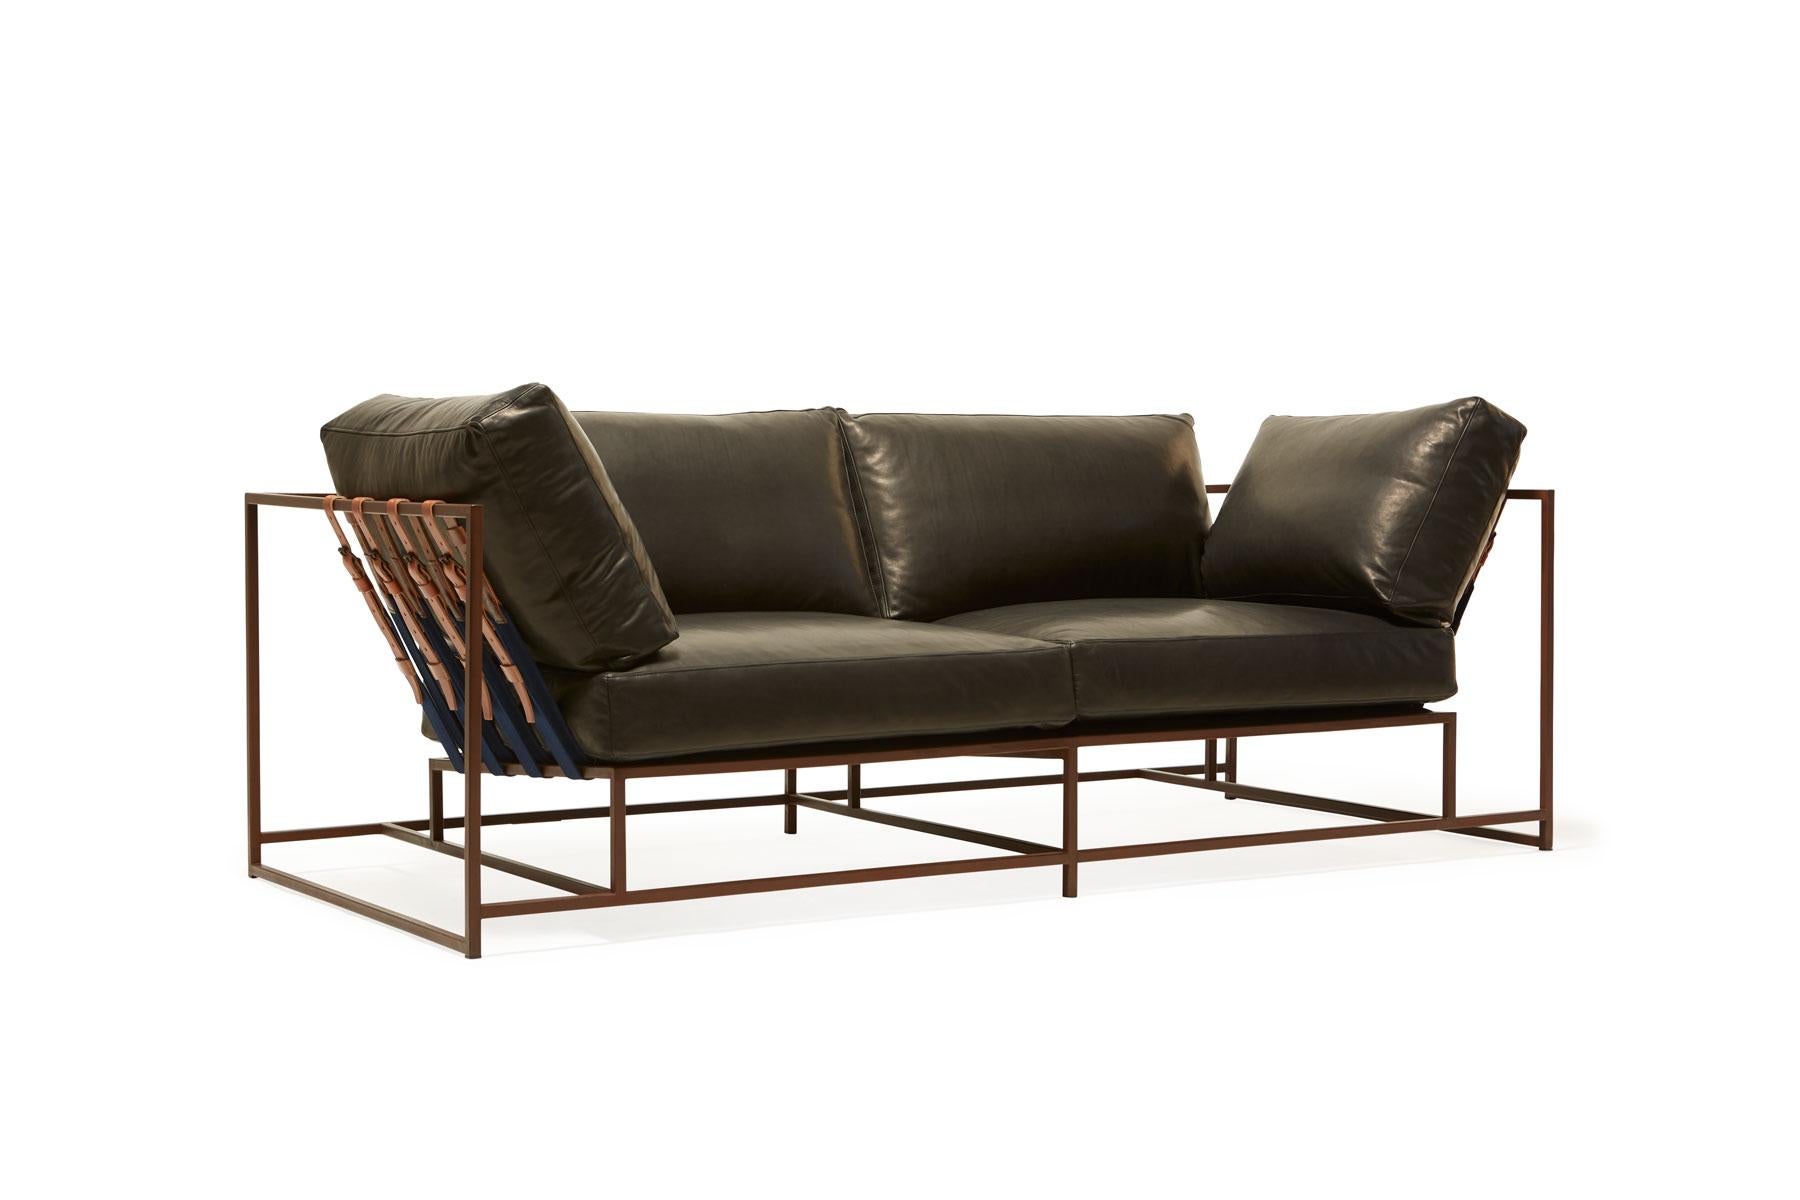 Das Inheritance Two Seat Sofa von Stephen Kenn ist ebenso bequem wie einzigartig. Das Design zeichnet sich durch eine exponierte Konstruktion aus, die aus drei Elementen besteht - einem Stahlrahmen, einer weichen Polsterung und stützenden Gurten.